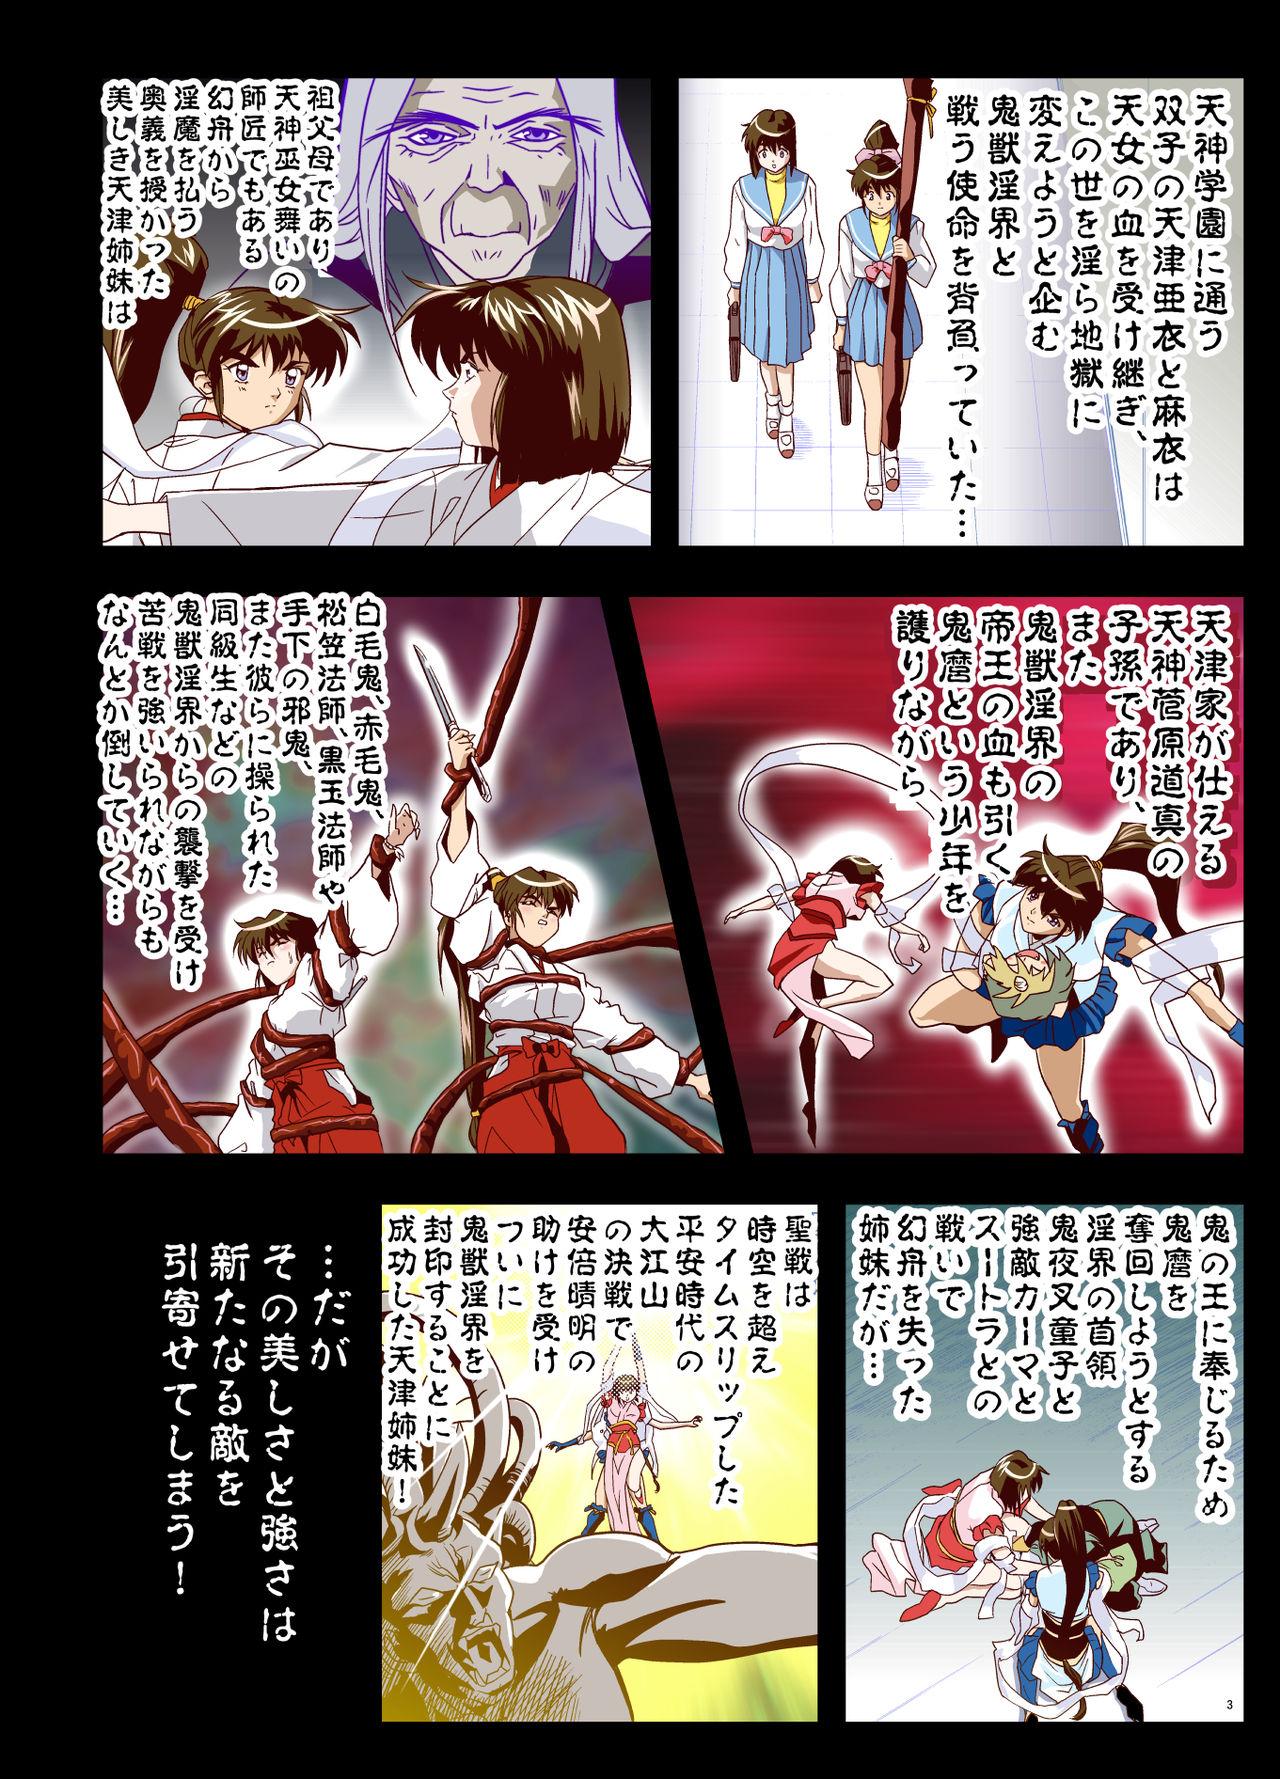 Nalgas Matsukasa Illusion Daiichiya - Twin angels Gay Brokenboys - Page 2